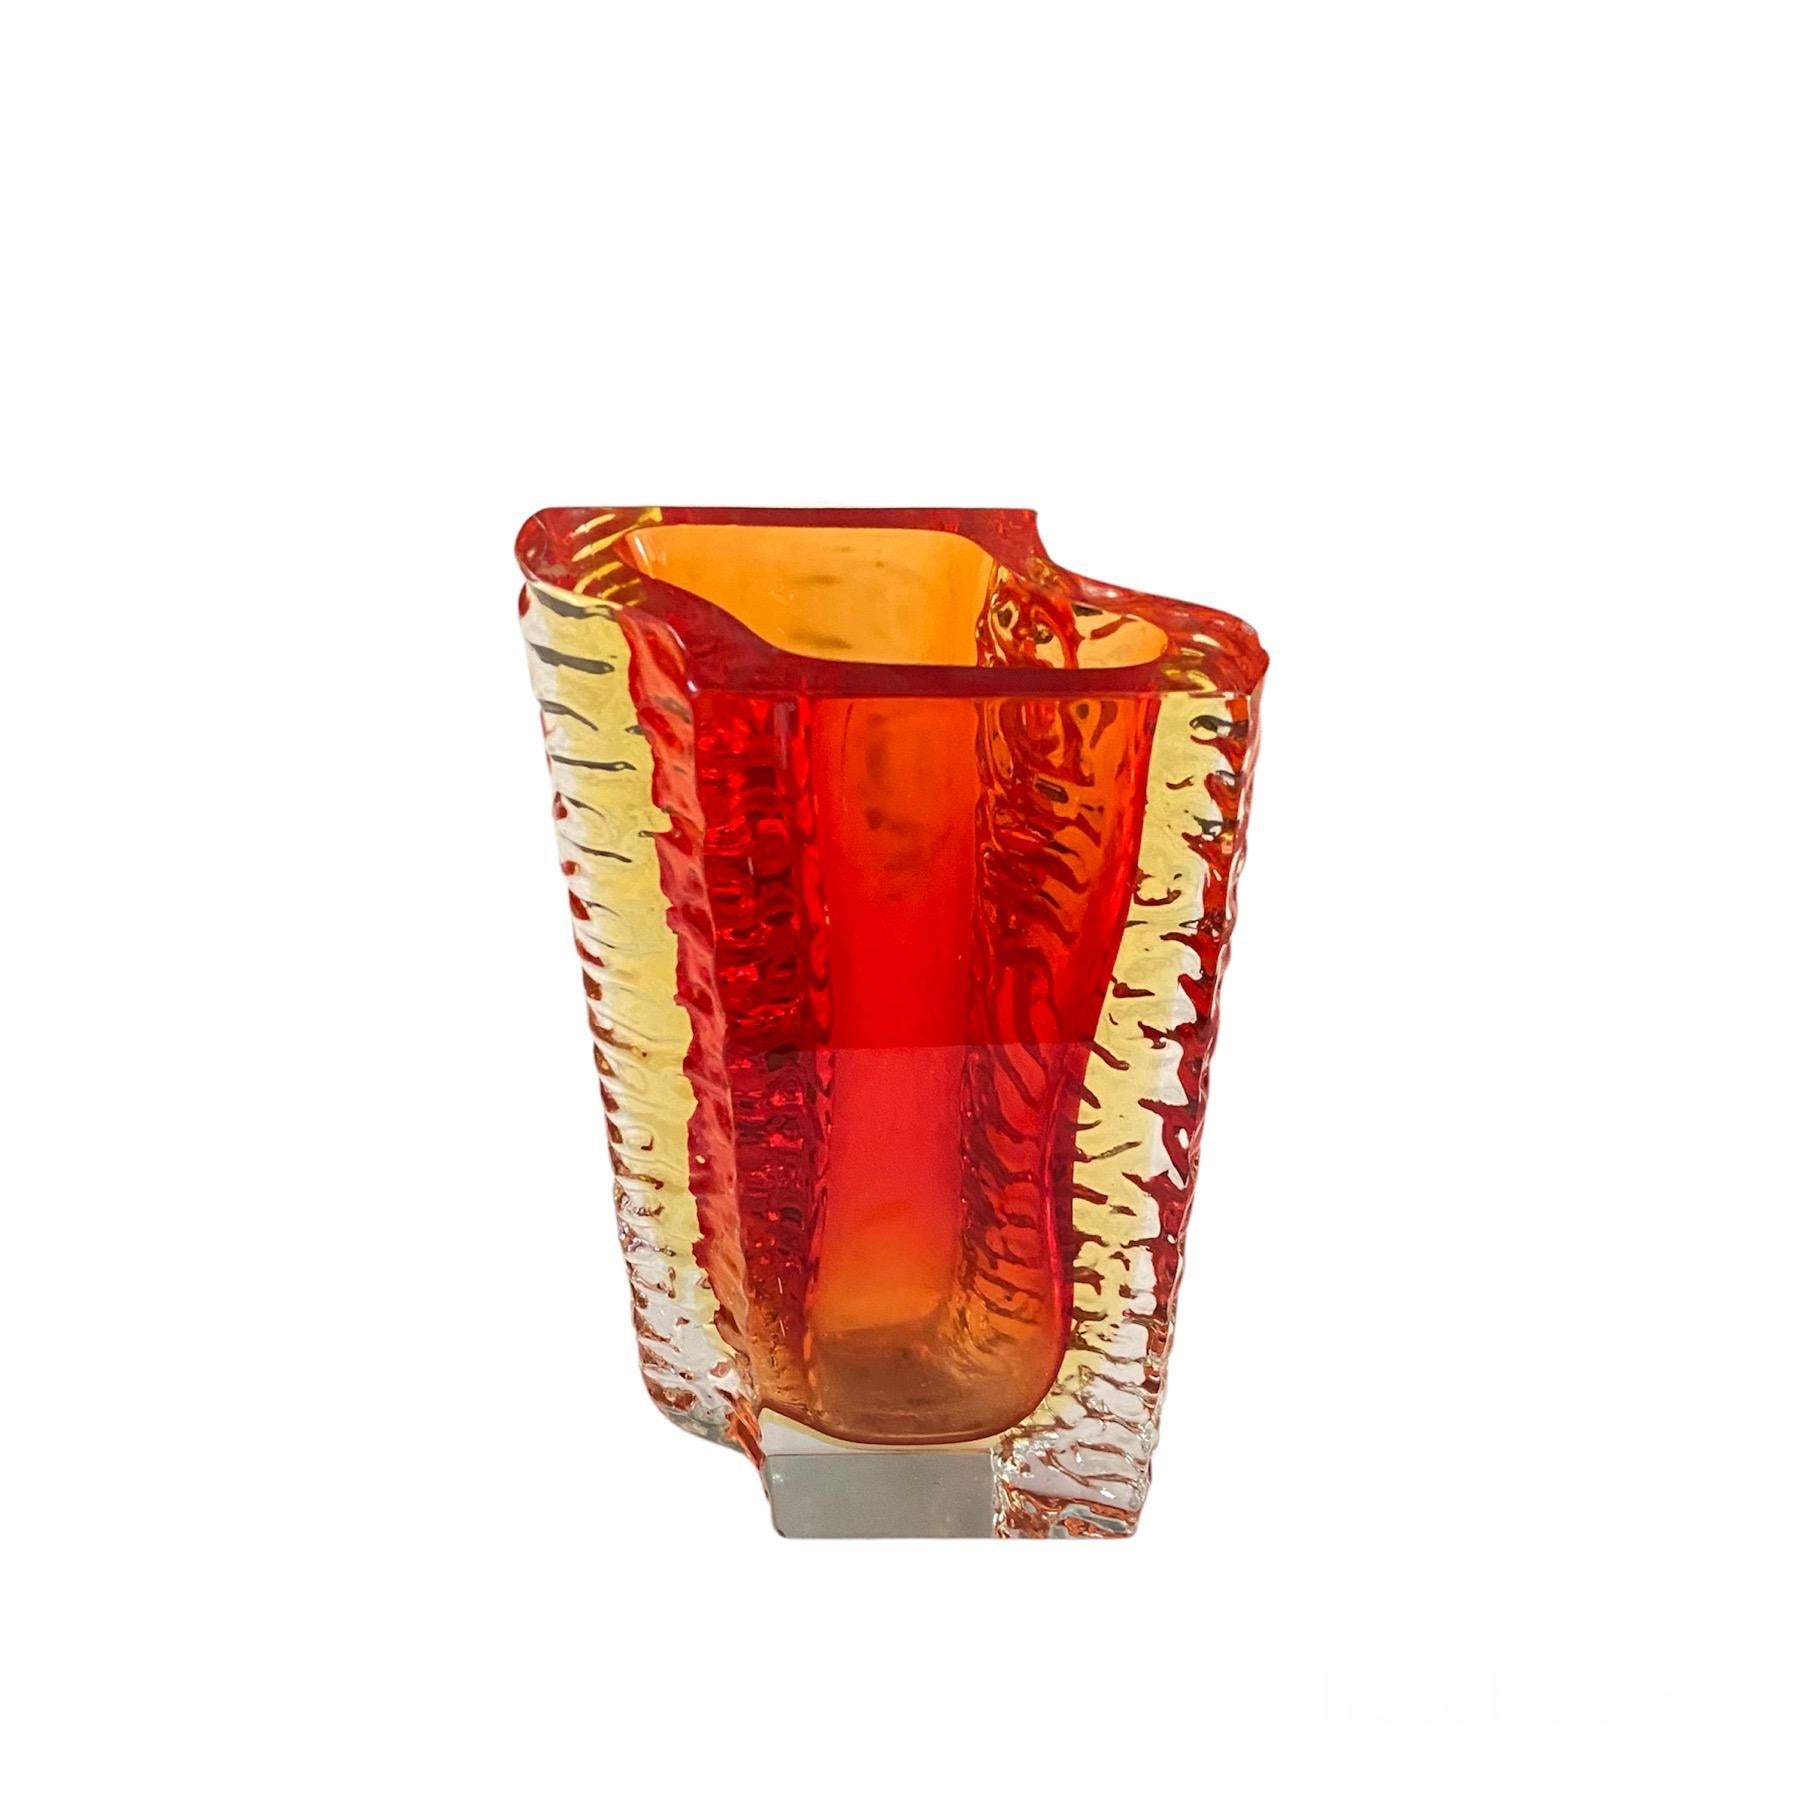 Flavio Poli Murano Glasvase für Poliarte, Italien 1970
 
Wunderschöne rote Vase aus Murano-Glas, entworfen von Flavio Poli für Poliarte.
Die Vase ist in sehr gutem Zustand, nur eine kleine Absplitterung am oberen Rand. 
Leichte Altersspuren.
